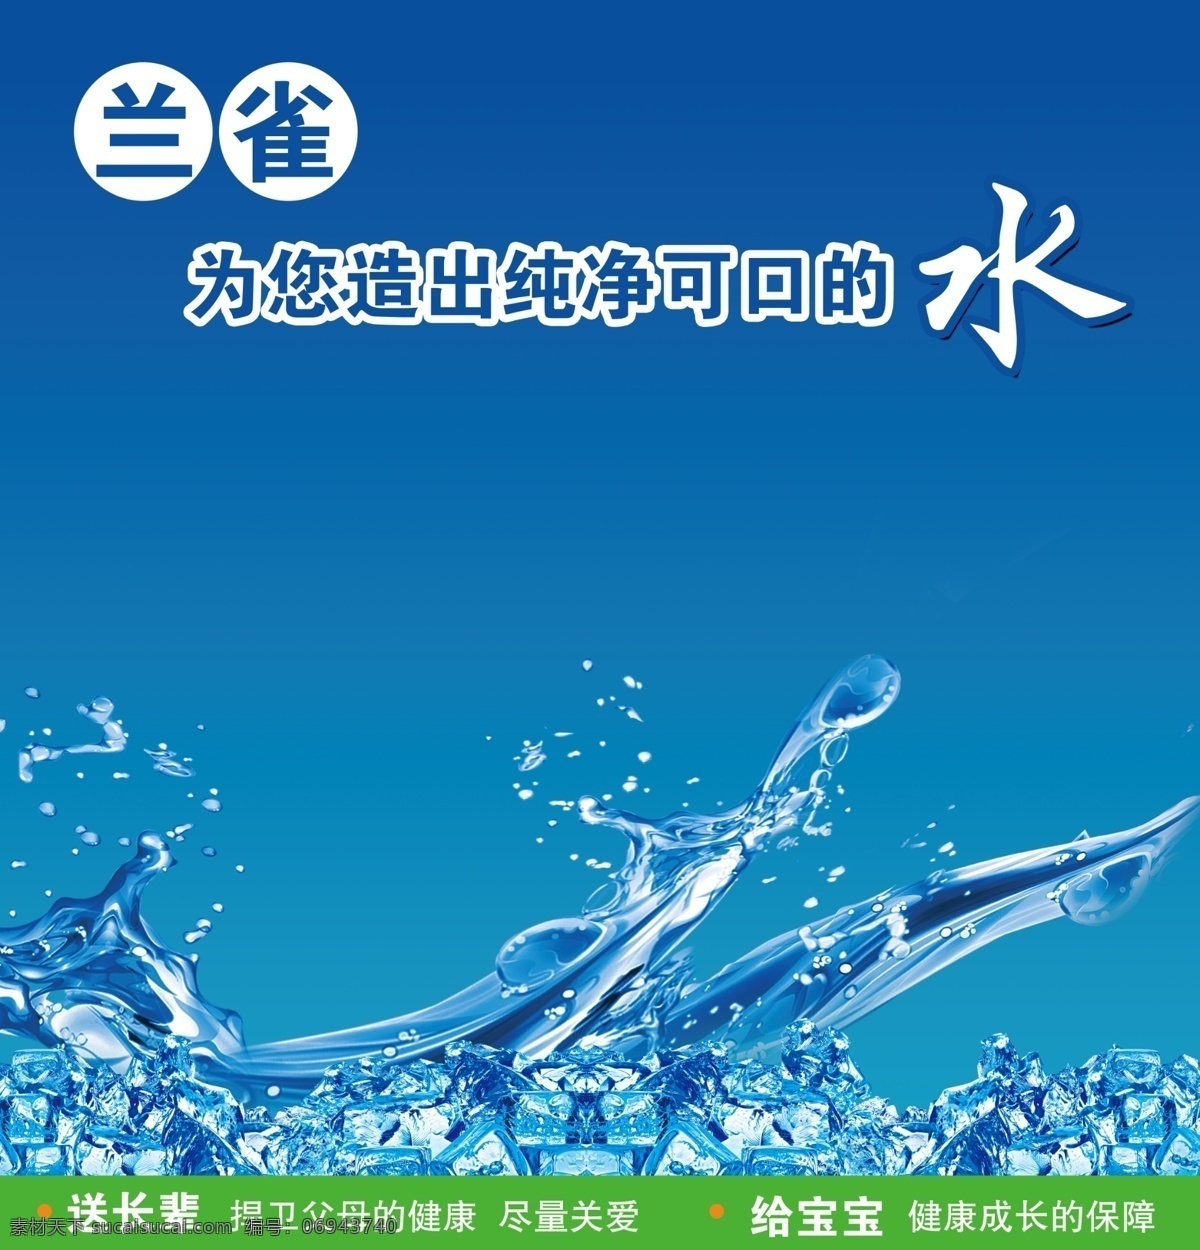 纯净水图片 纯净水 兰雀 蓝色 水 宣传